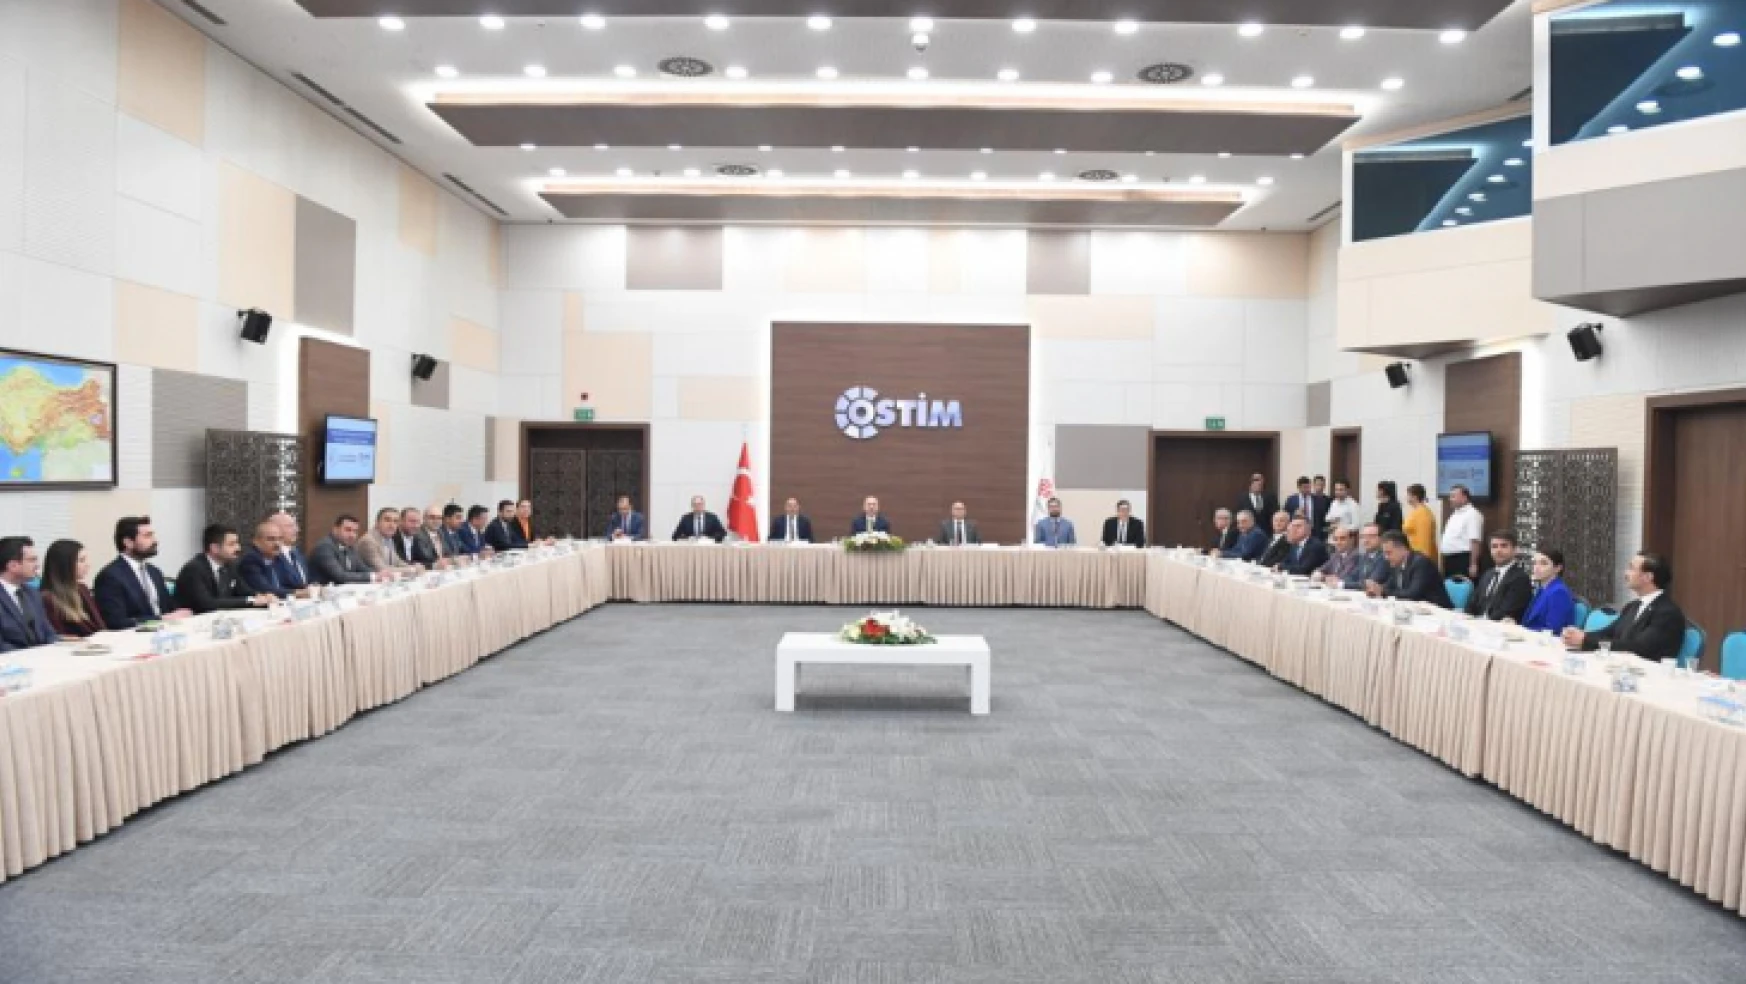 Ulaştırma ve Altyapı Bakanı Karaismailoğlu, Haberleşme Teknolojileri Kümelenmesi 5G Faz 2 Bilgilendirme Toplantısı'na katıldı.